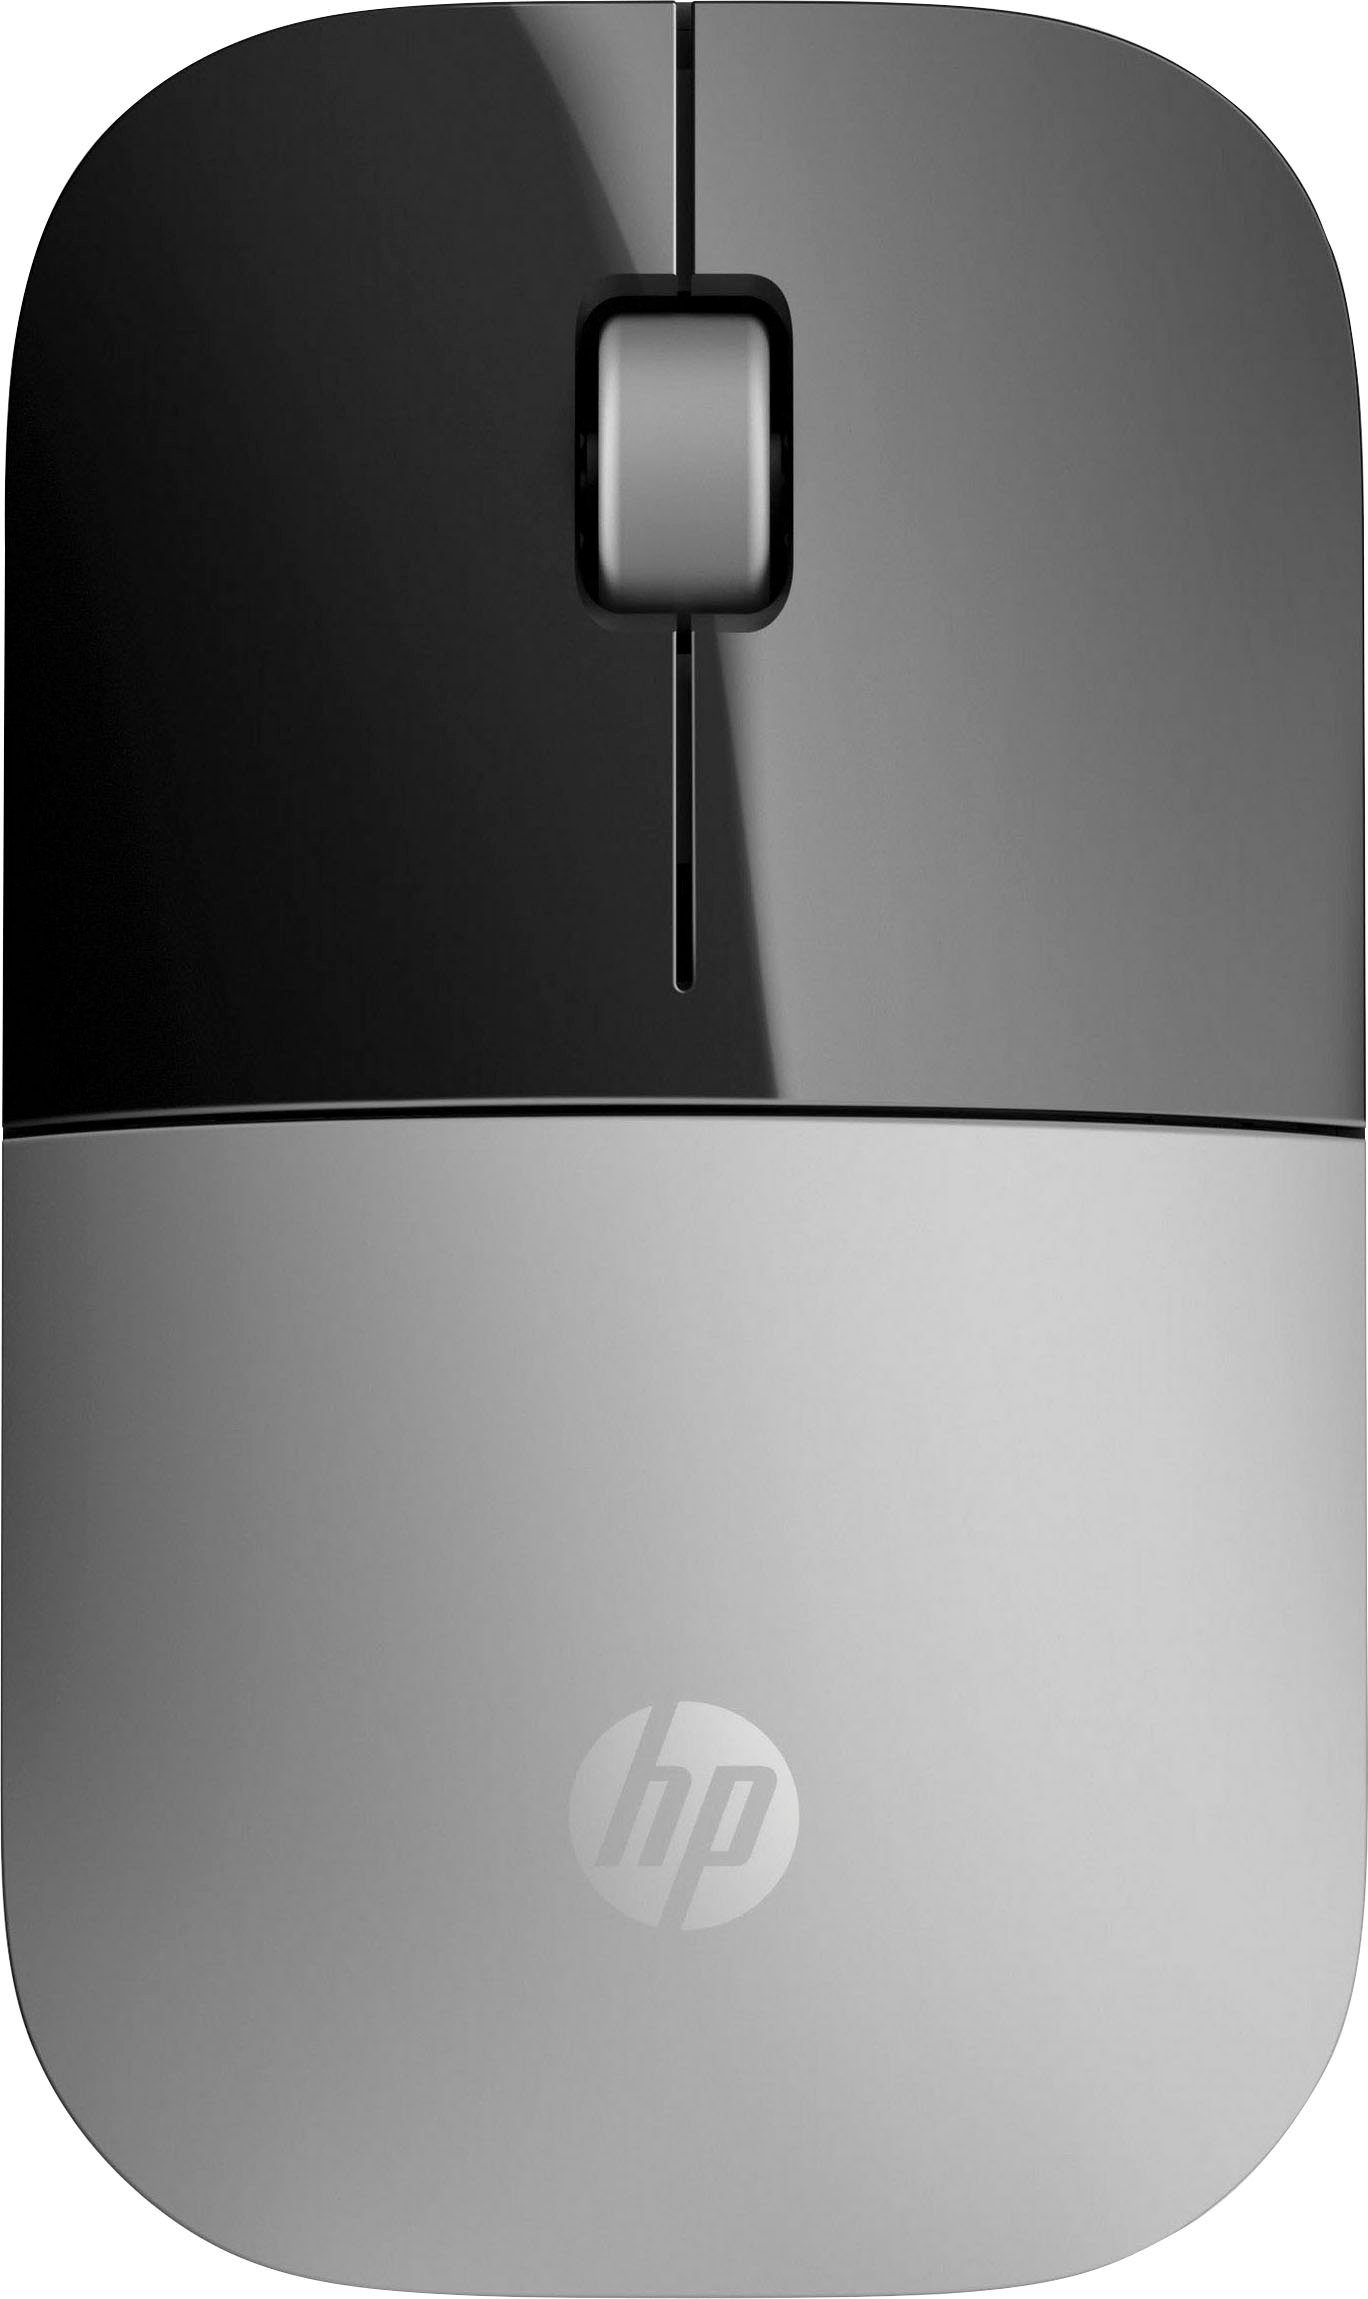 HP Z3700 Maus schwarz/silberfarben